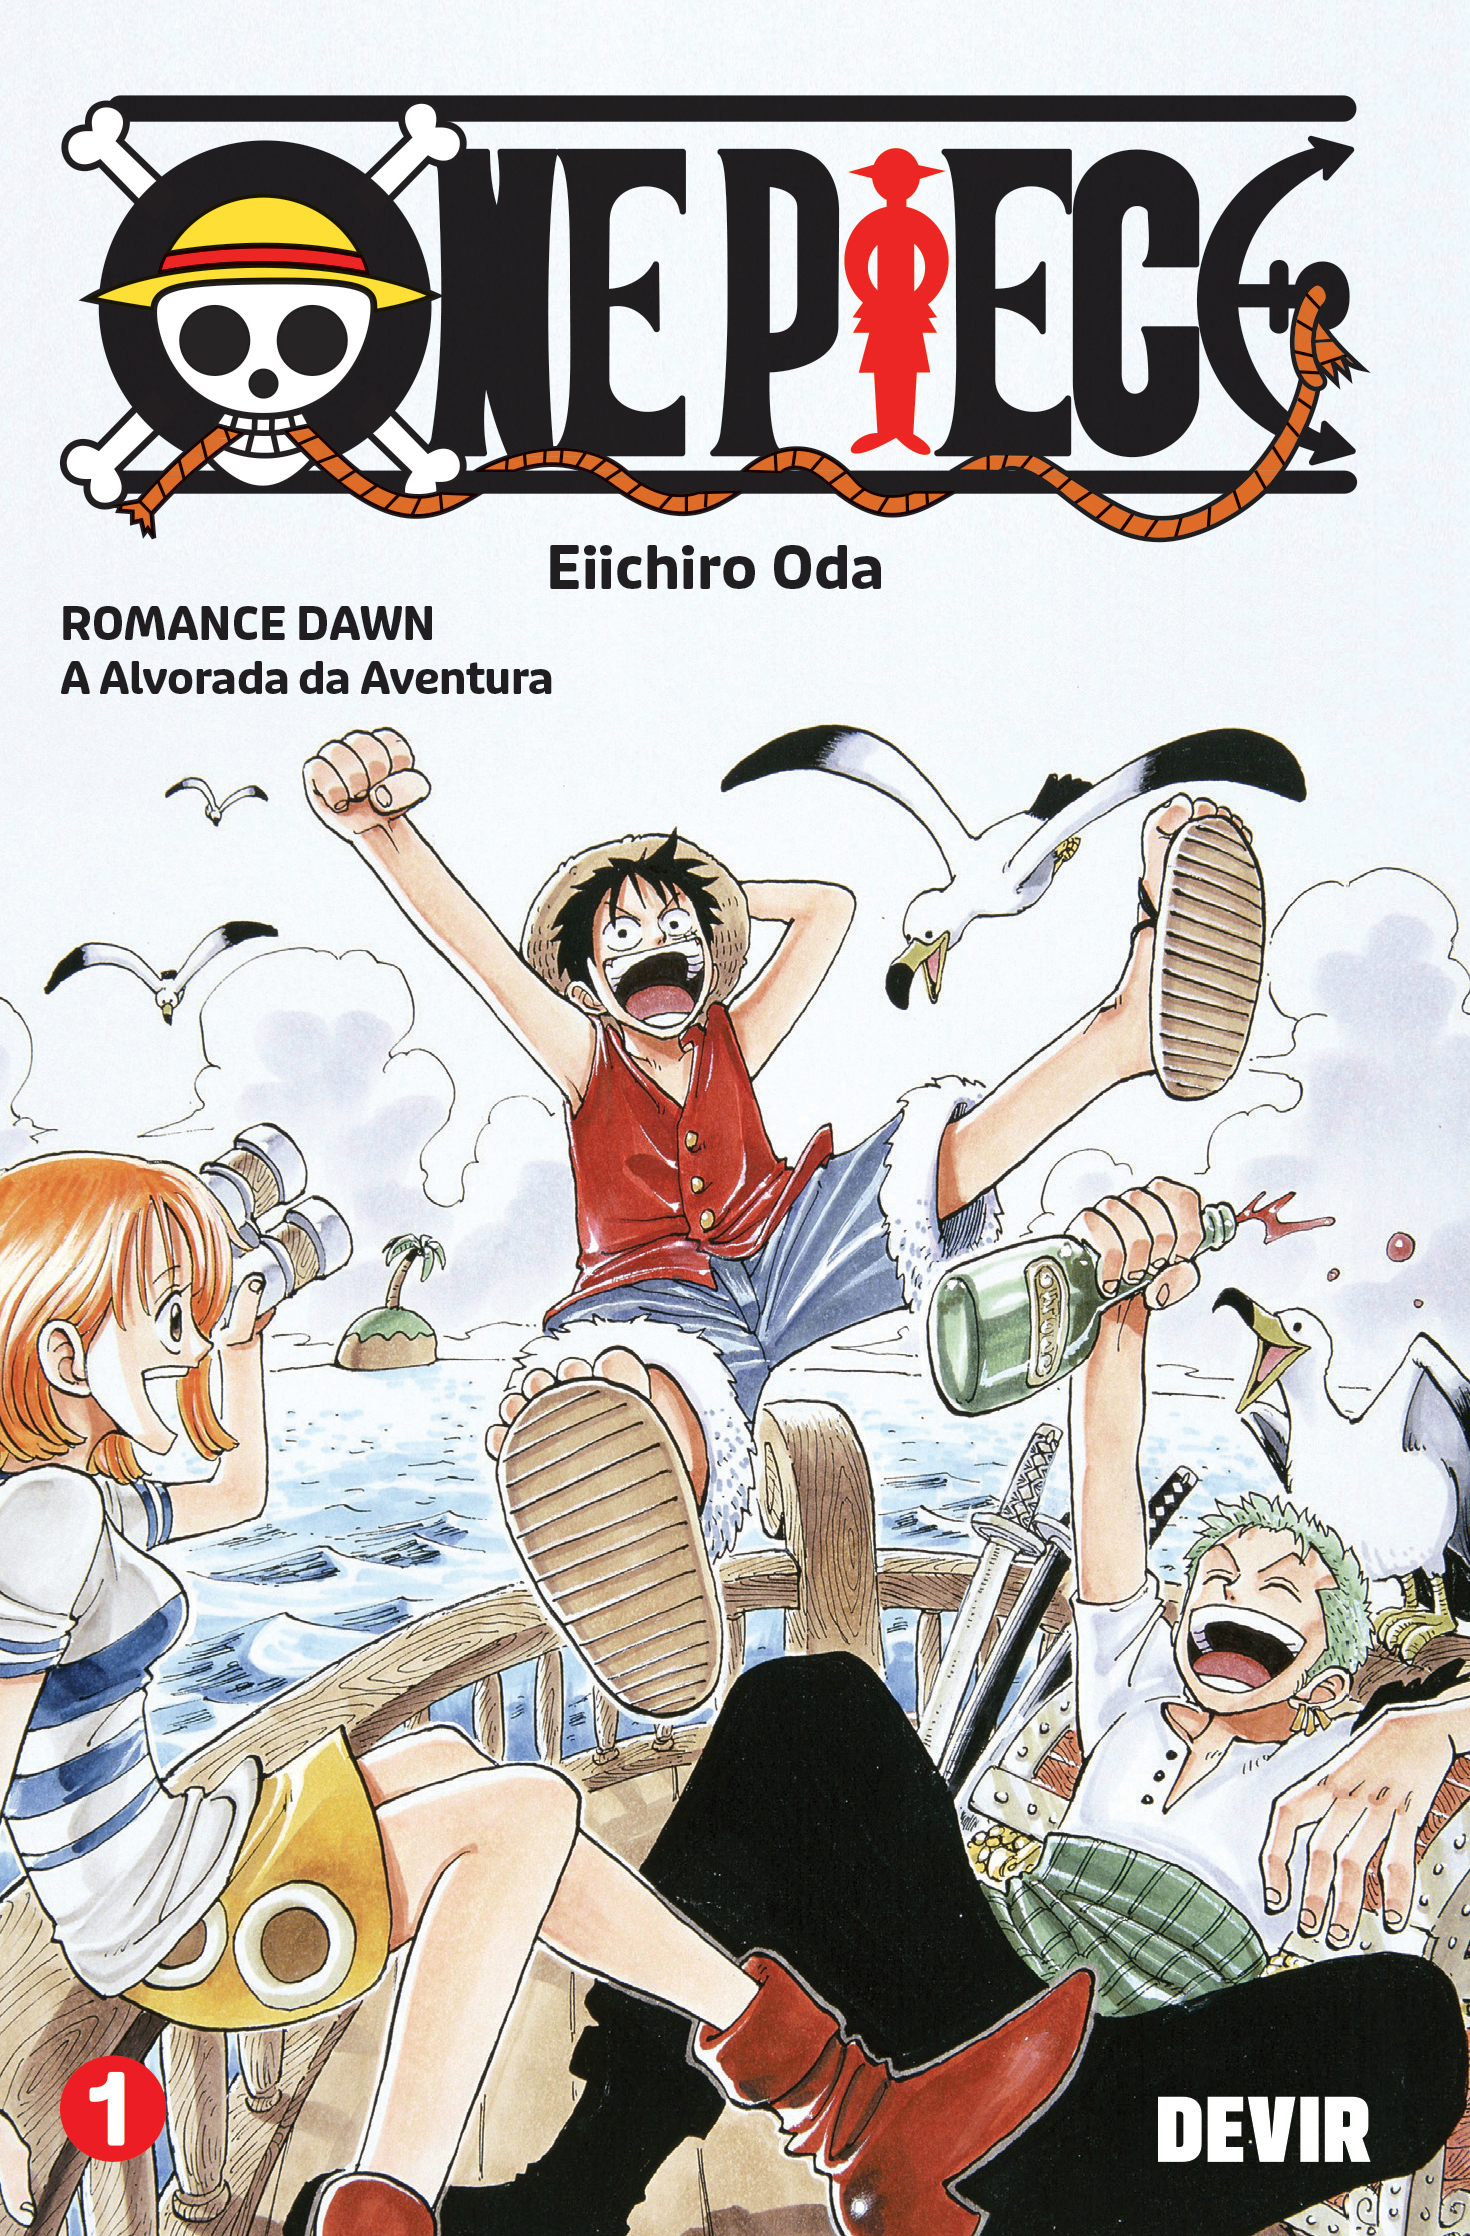 Episódio 971 de One Piece: Data e Hora de Lançamento - Manga Livre RS